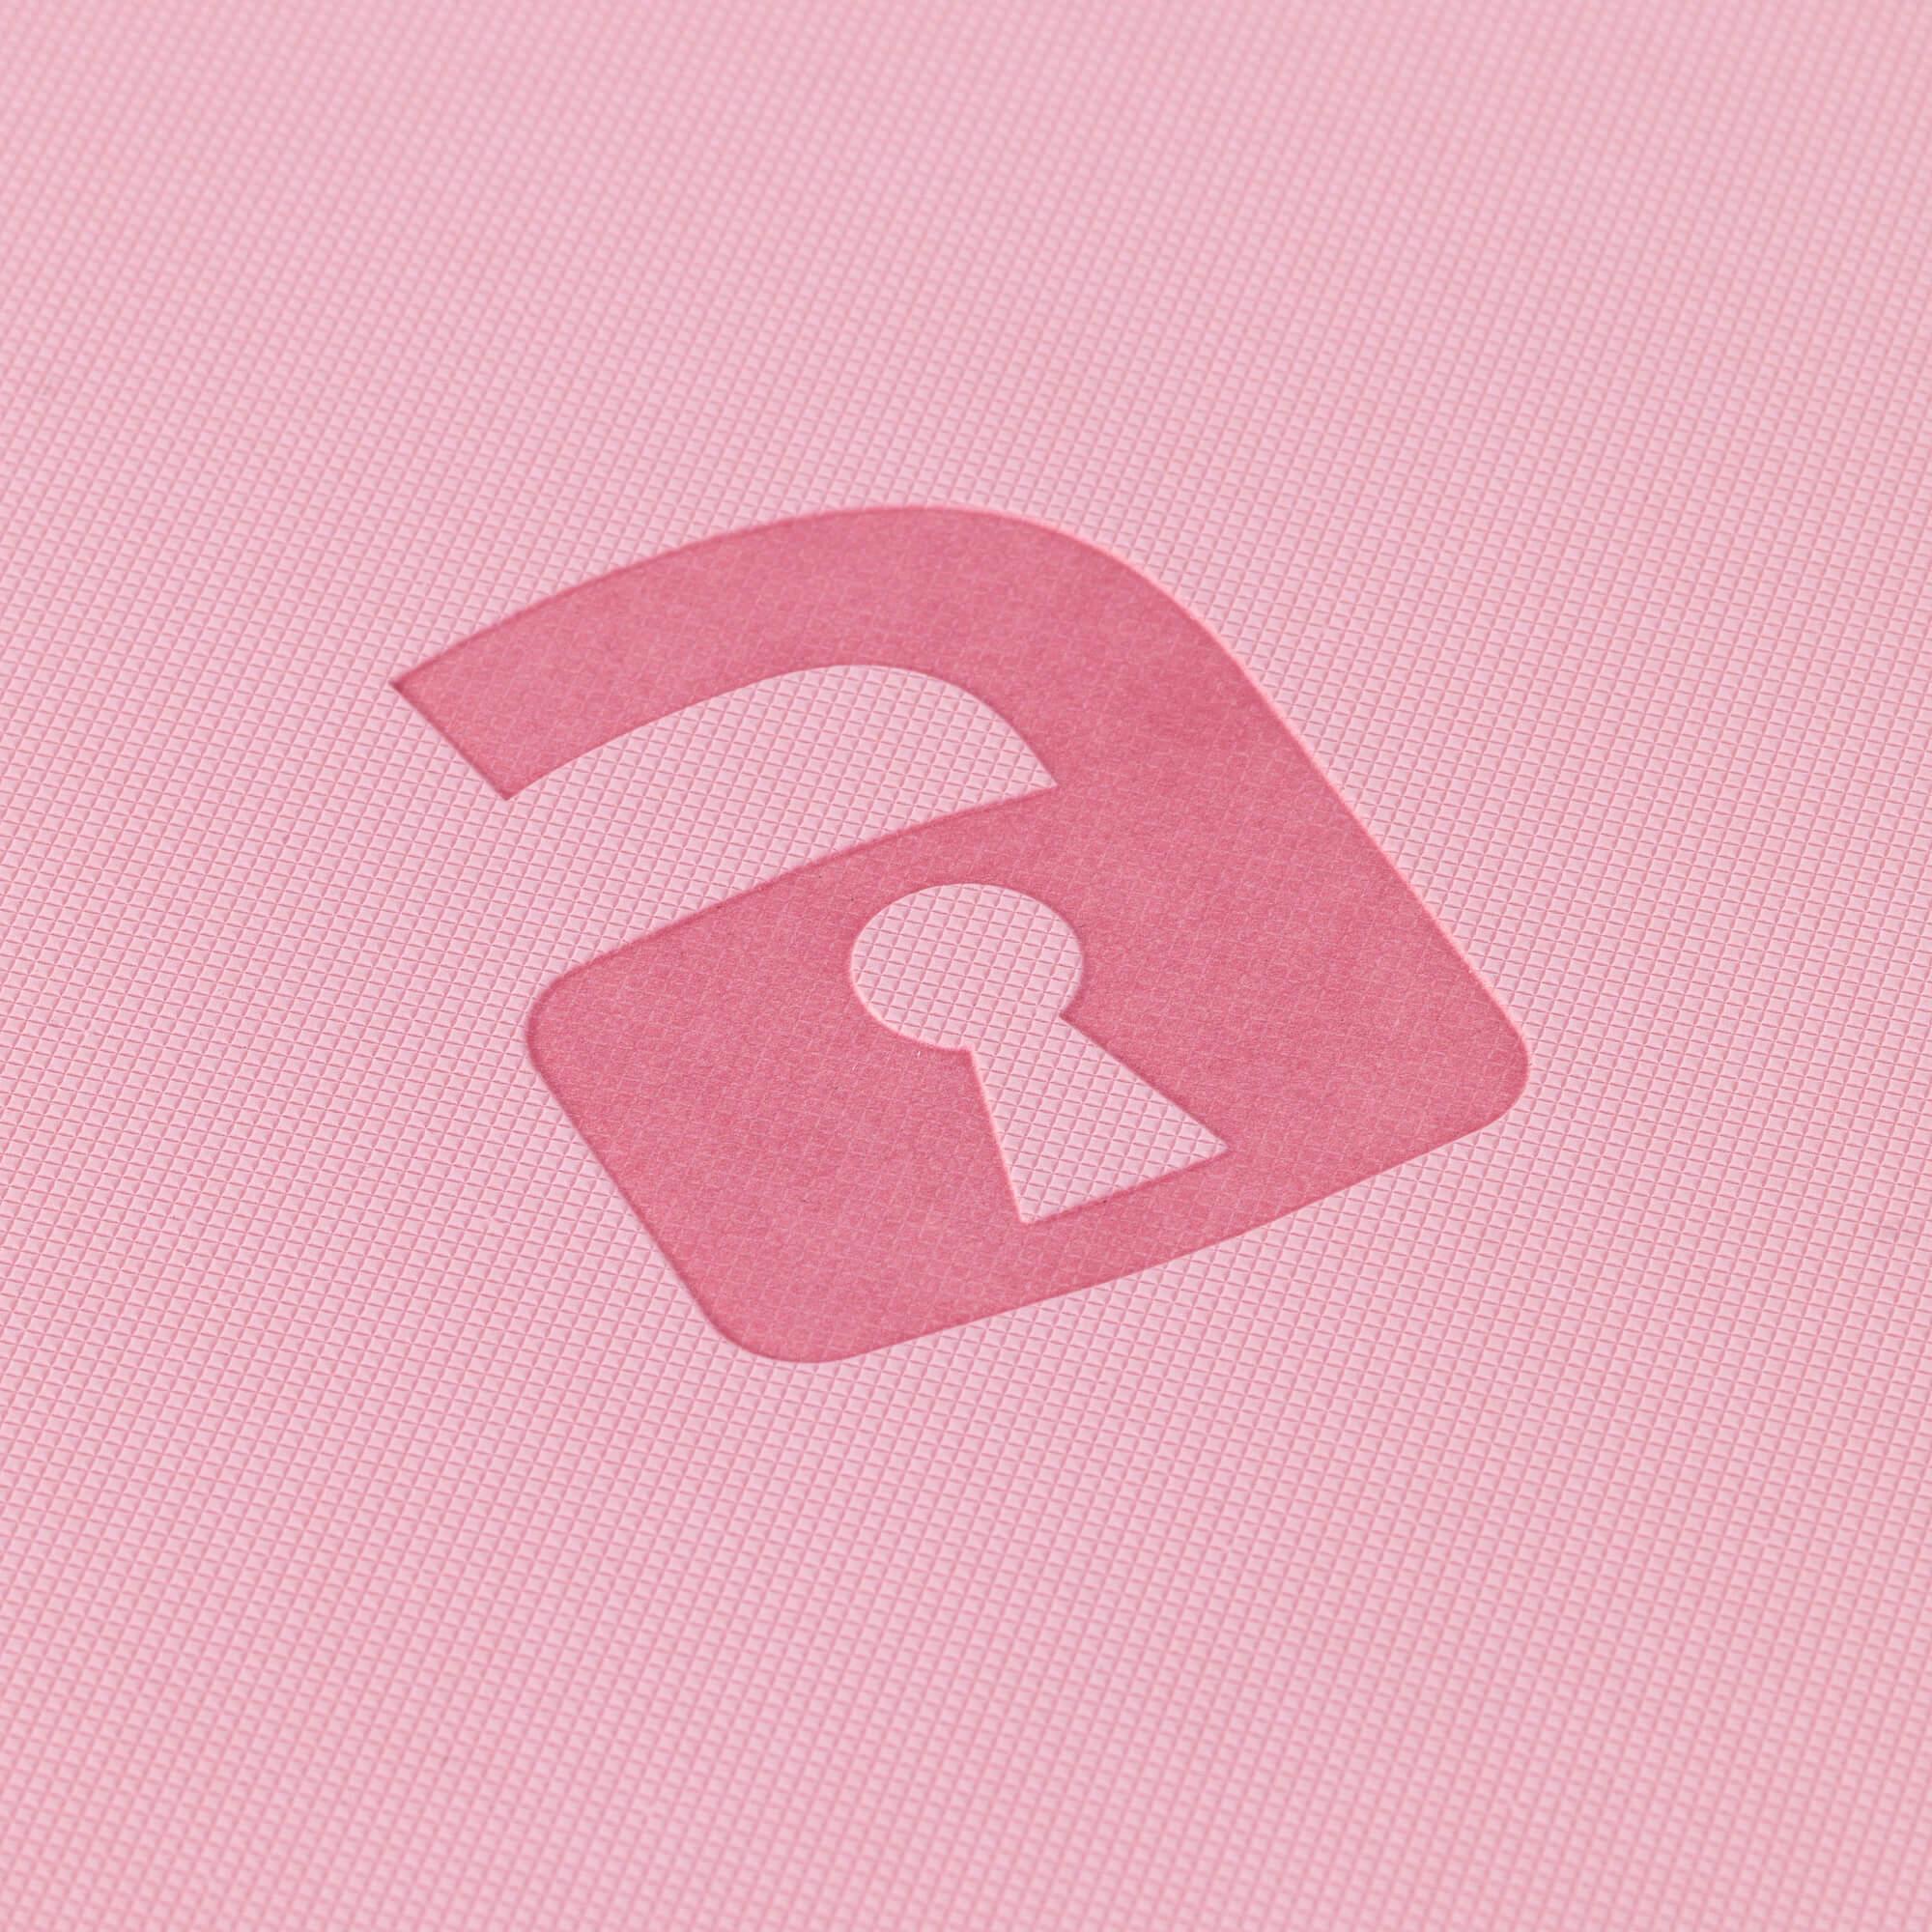 Vault X 9-Pocket Exo-Tec® Zip Binder - Just Pink - The Card Vault